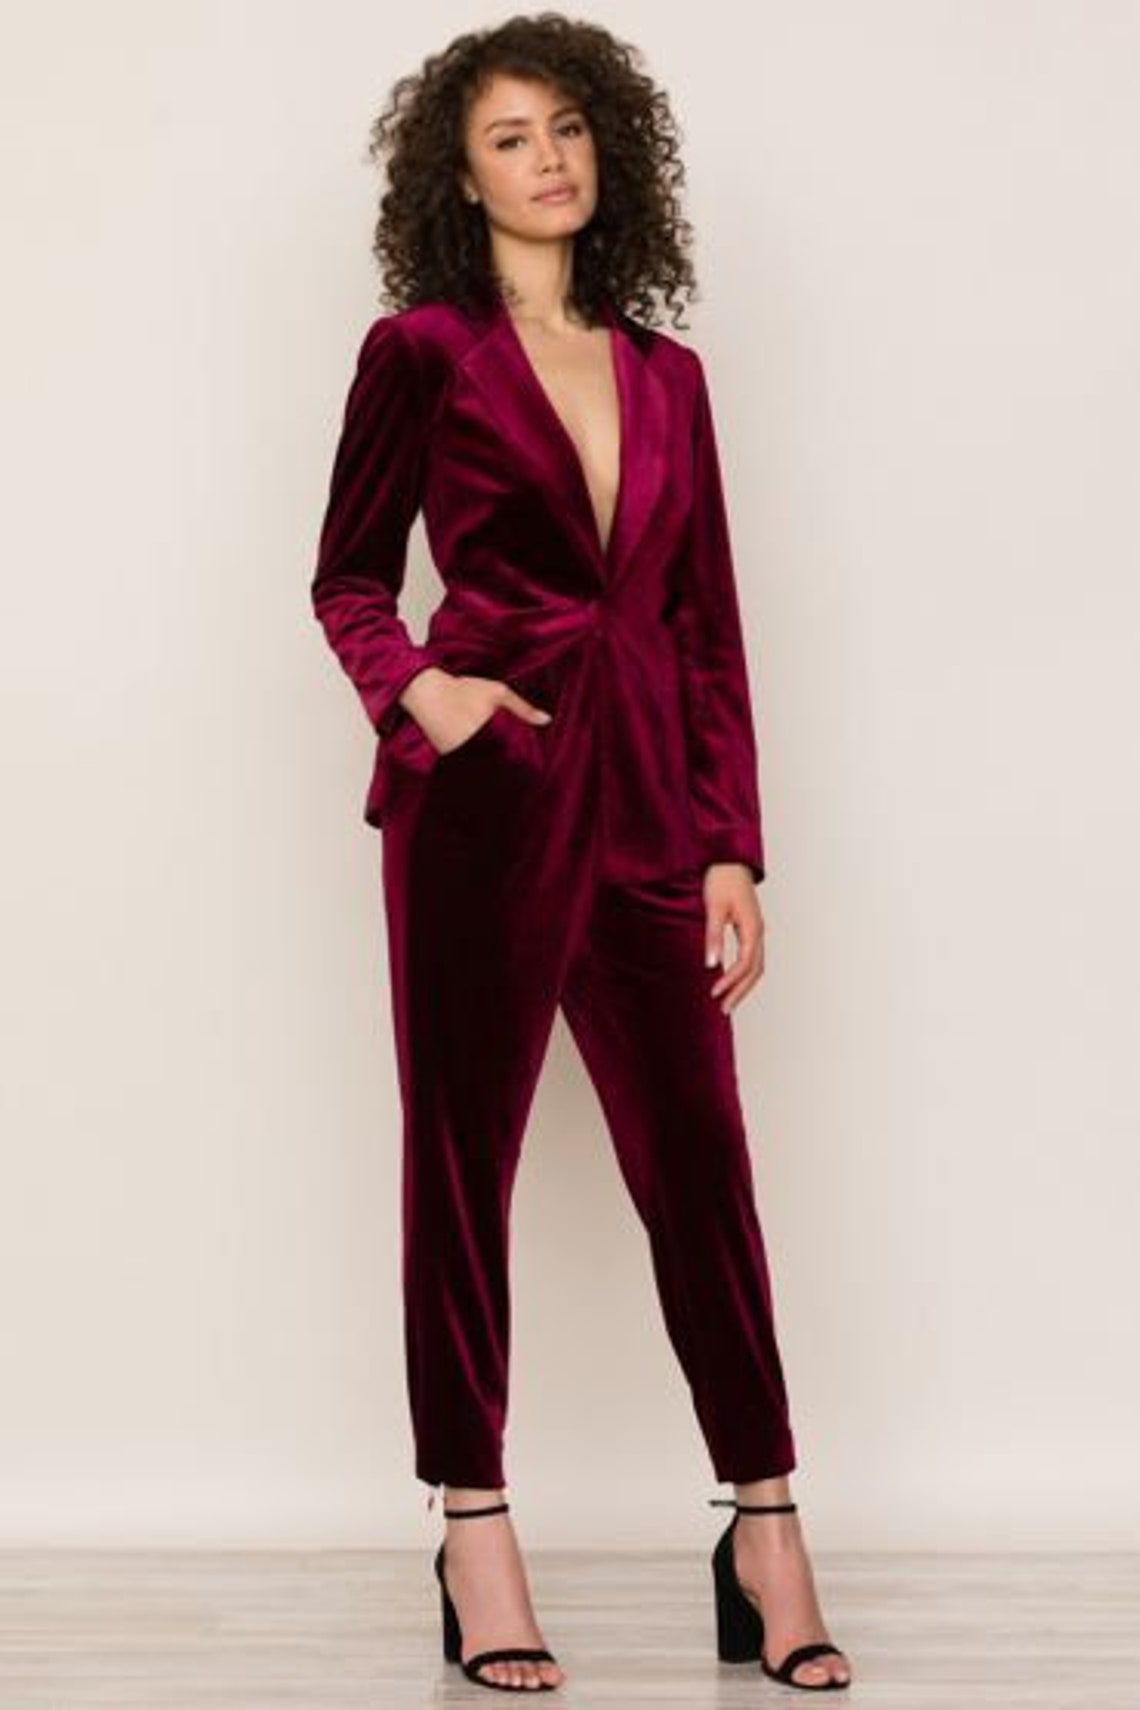 Burgundy Velvet Suit for Women/ GIRL Pant Suit/women's - Etsy